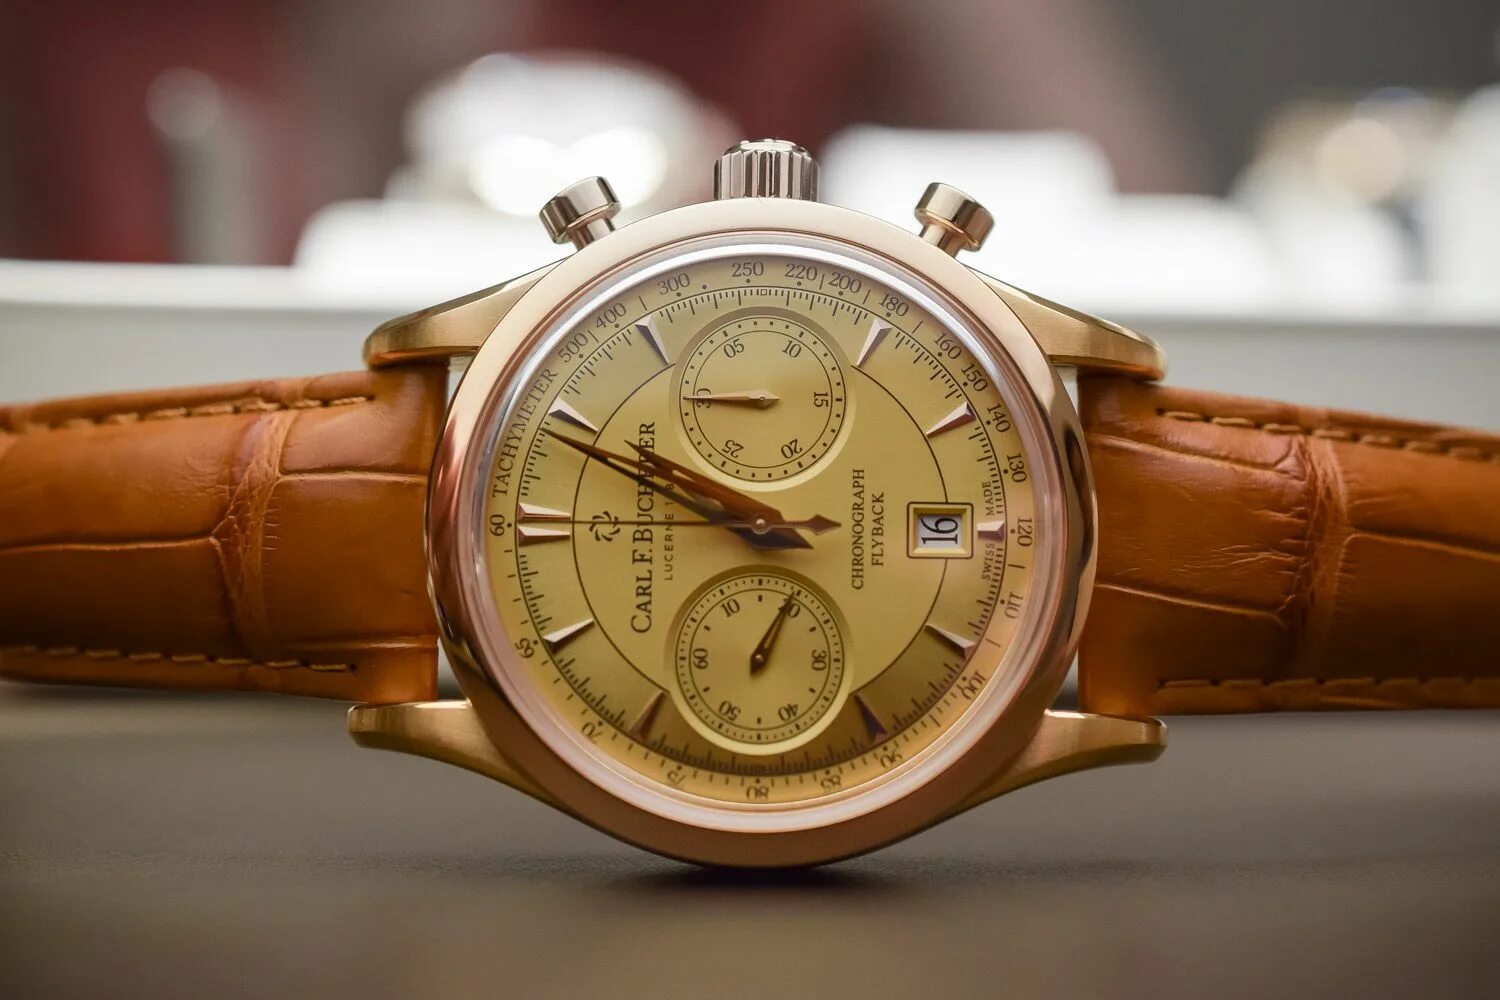 Мужские наручные часы Carl f. Bucherer. Часы Bucherer мужские золотые. Швейцарские золотые мужские